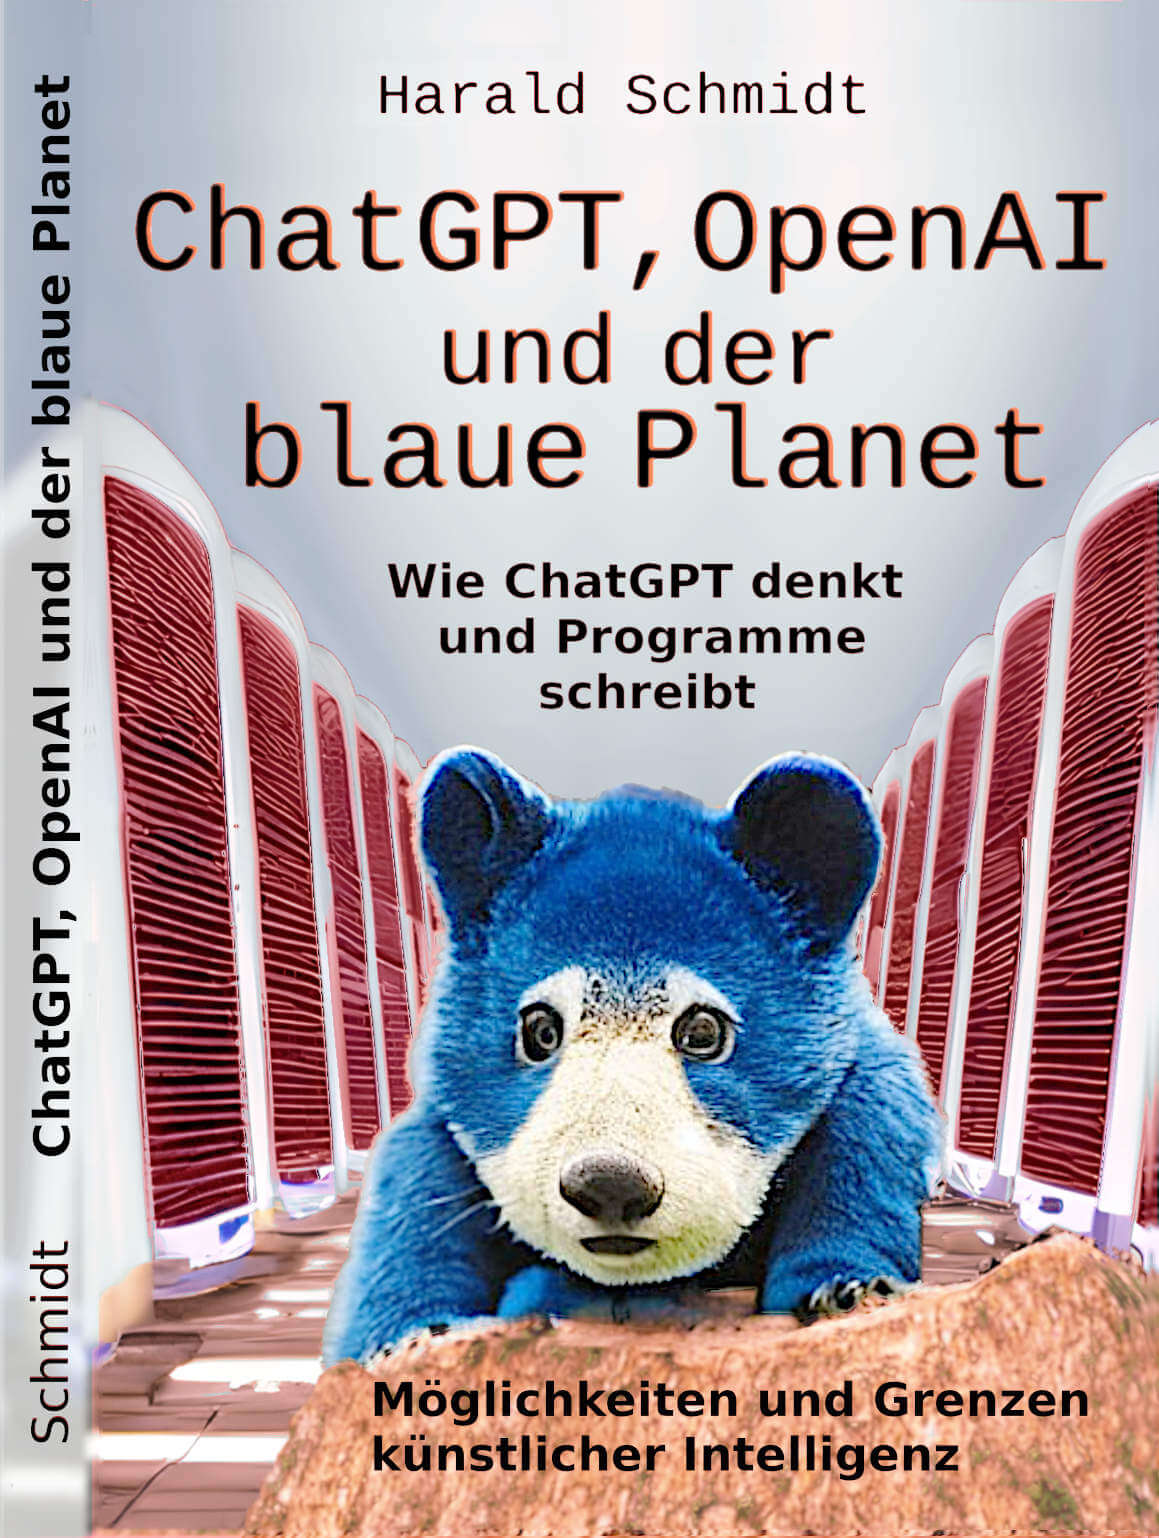 ChatGPT, OpenAI und der blaue Planet Eine Sprachmodell-KI als Coach, Python-Codegenerator und Chatbot